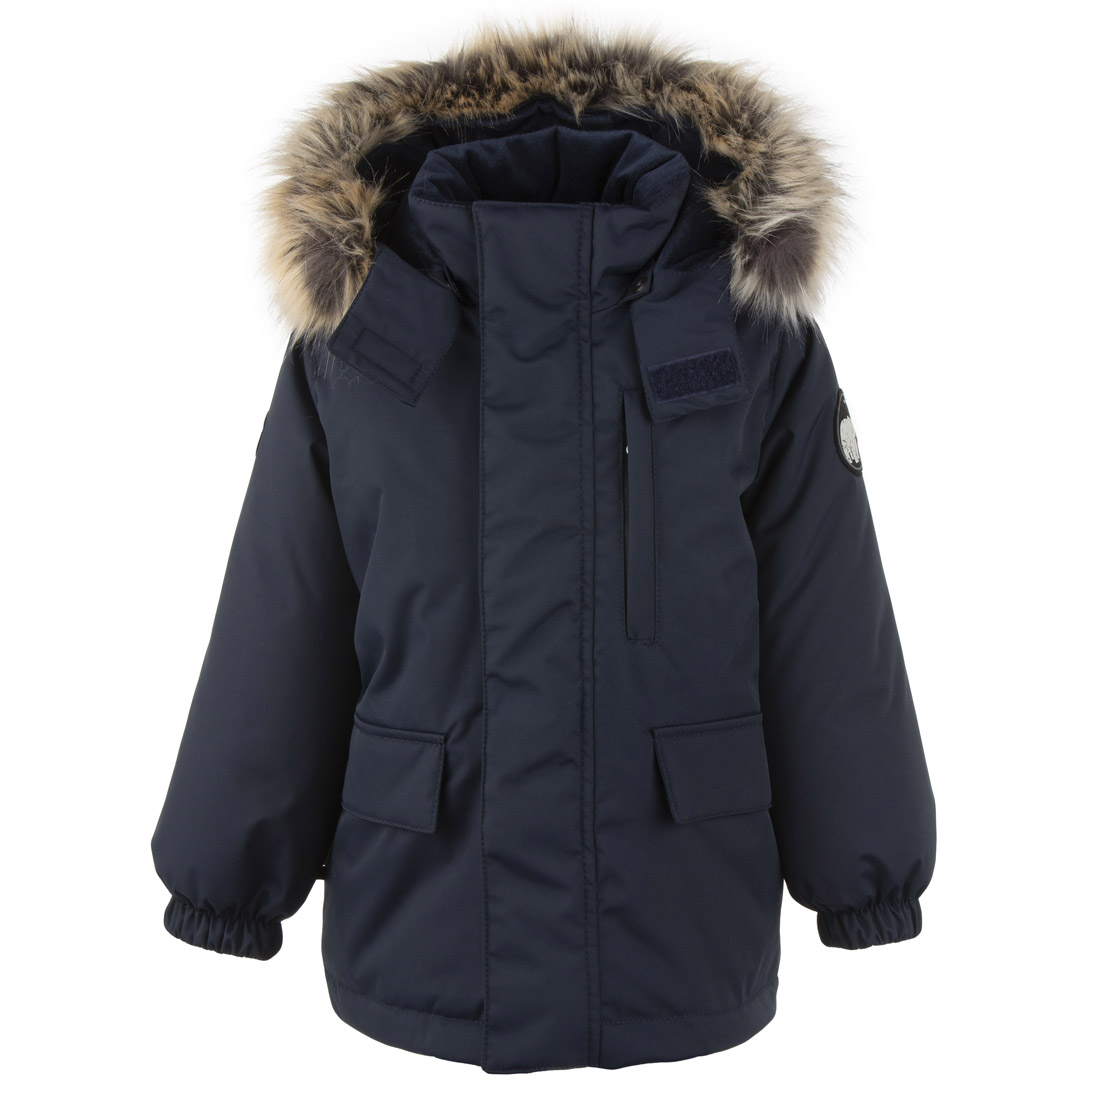 Купить Куртка-парка для мальчиков KERRY SNOW K20441, размер 104,